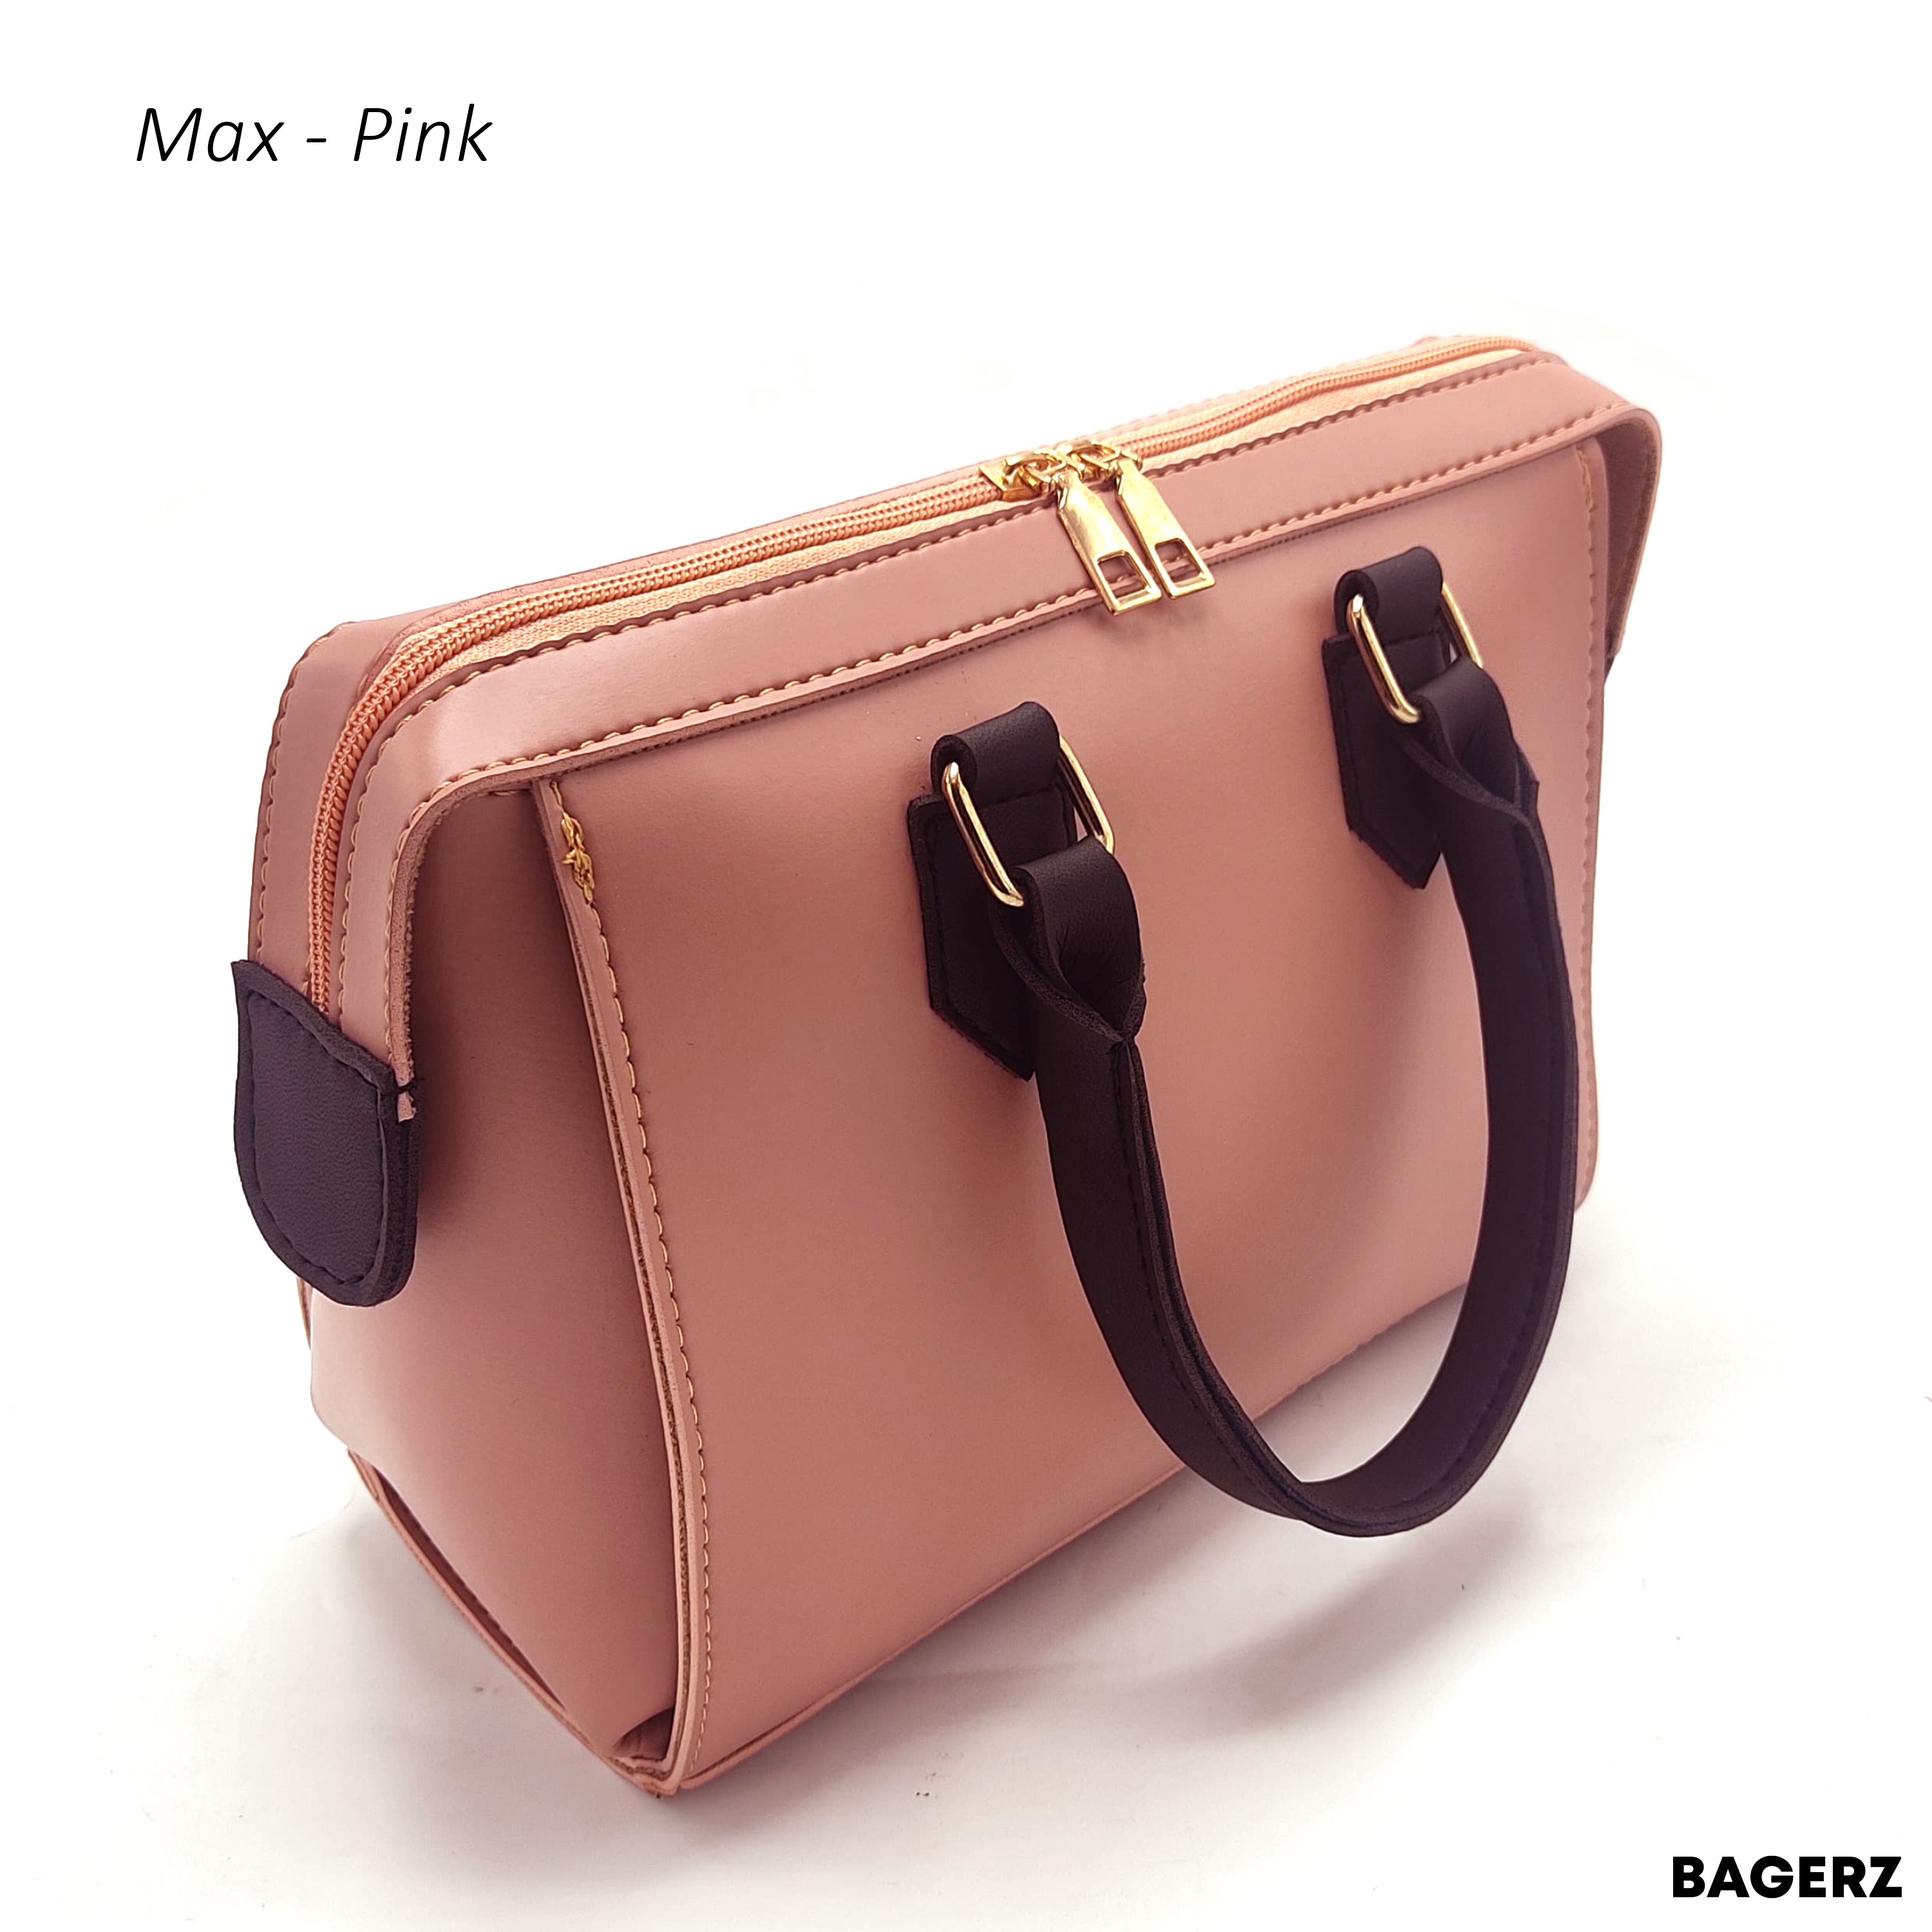 Max - Pink